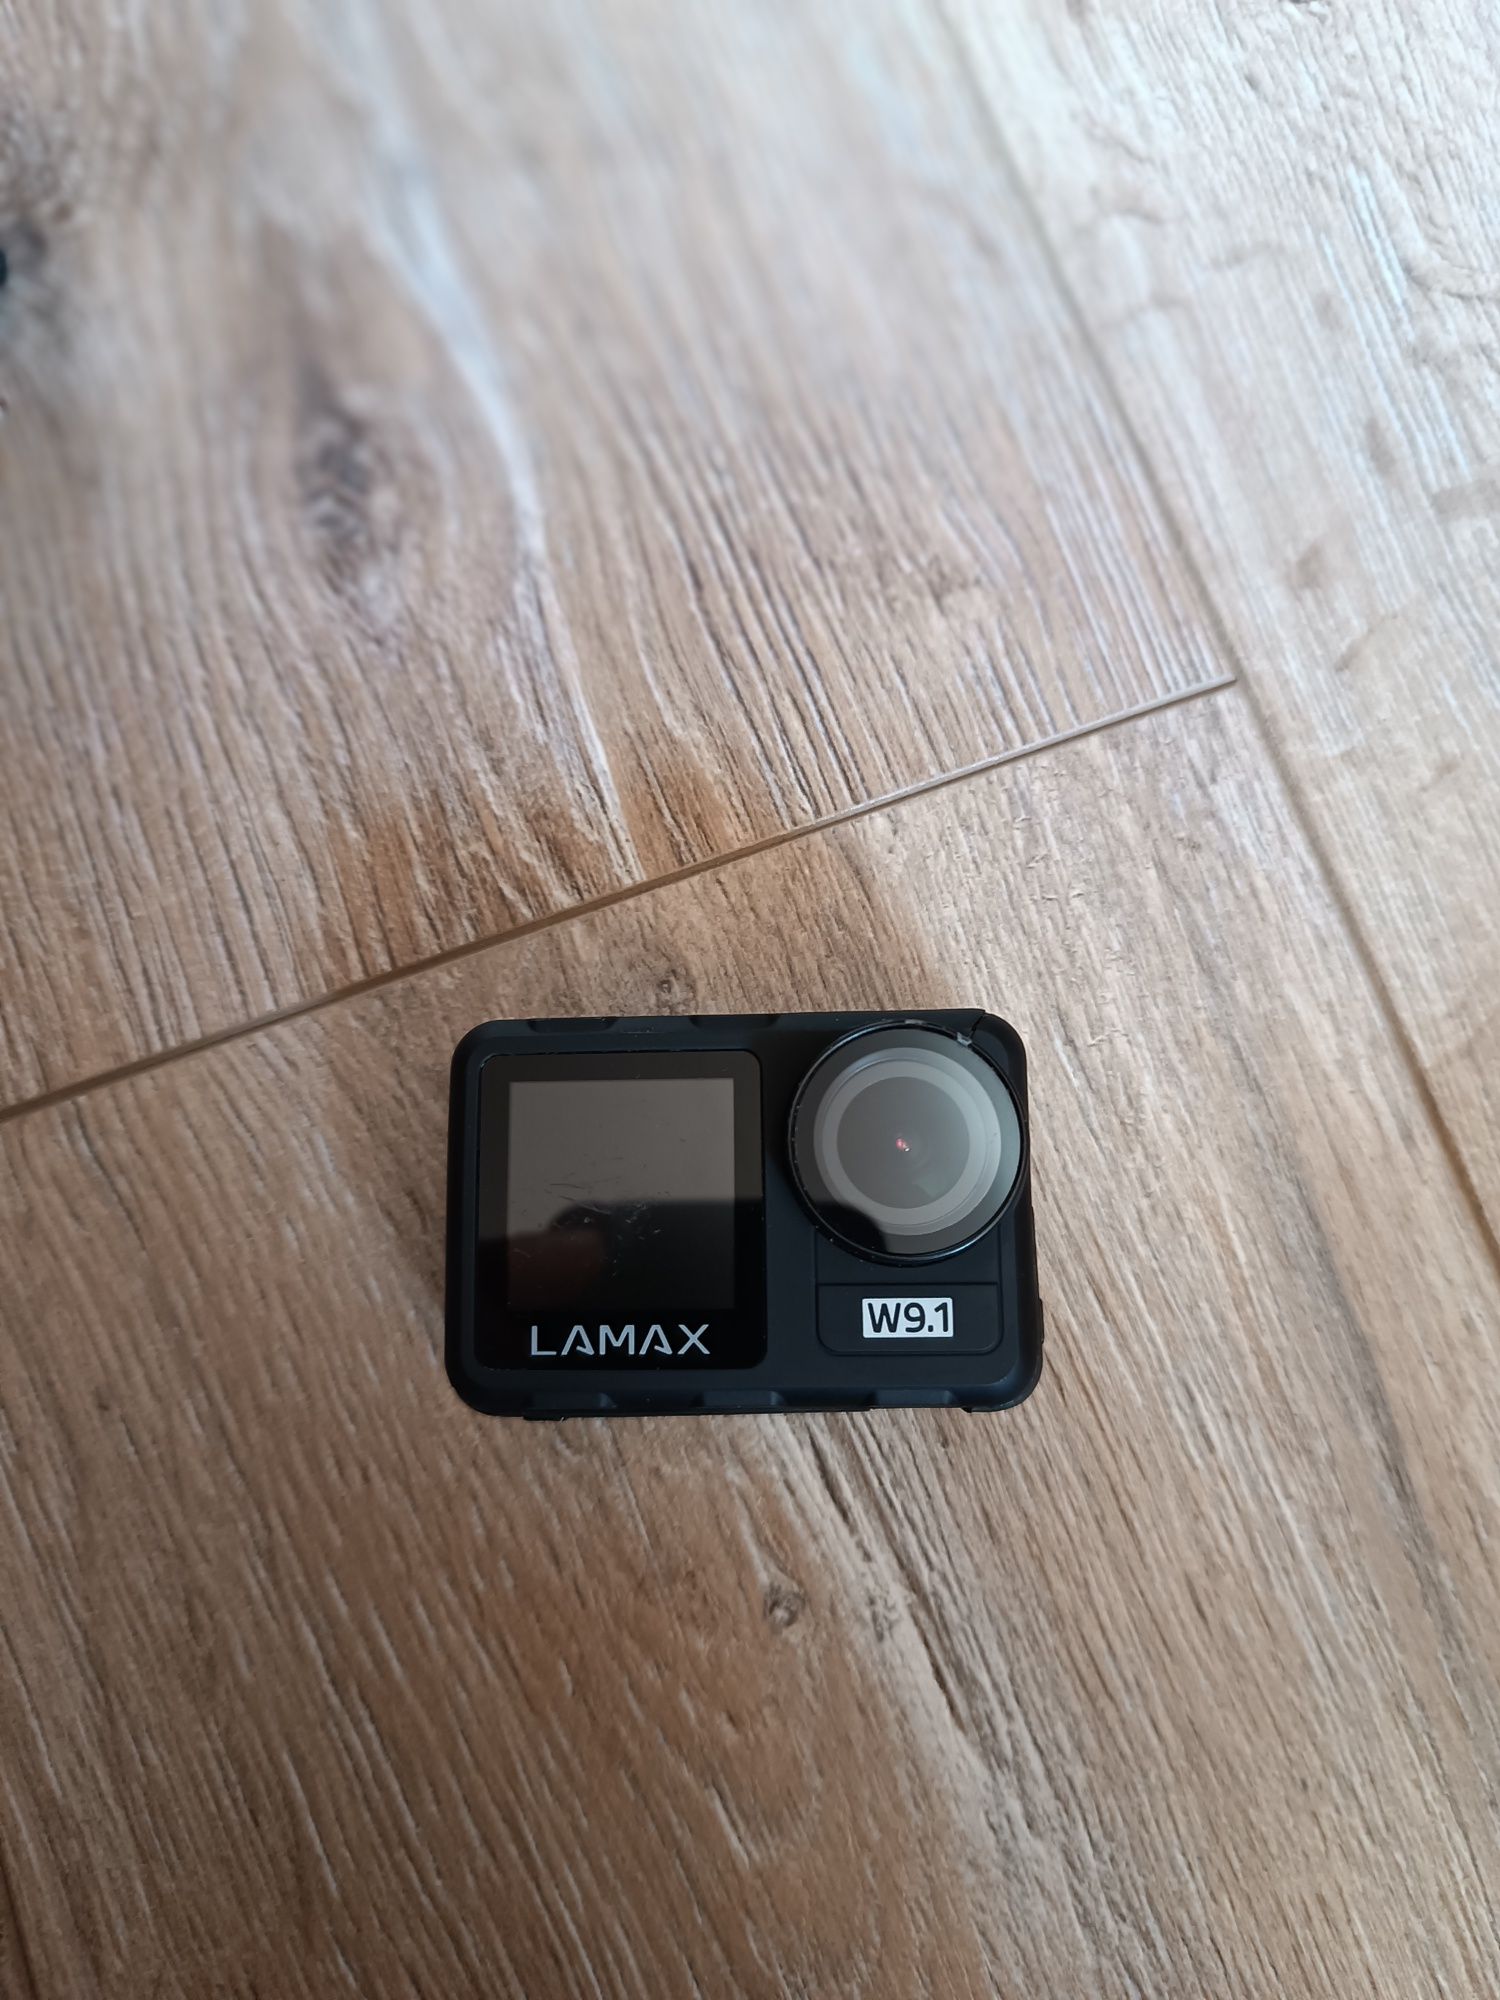 Kamerka sportowa Lamax W9.1 wraz z akcesoriami